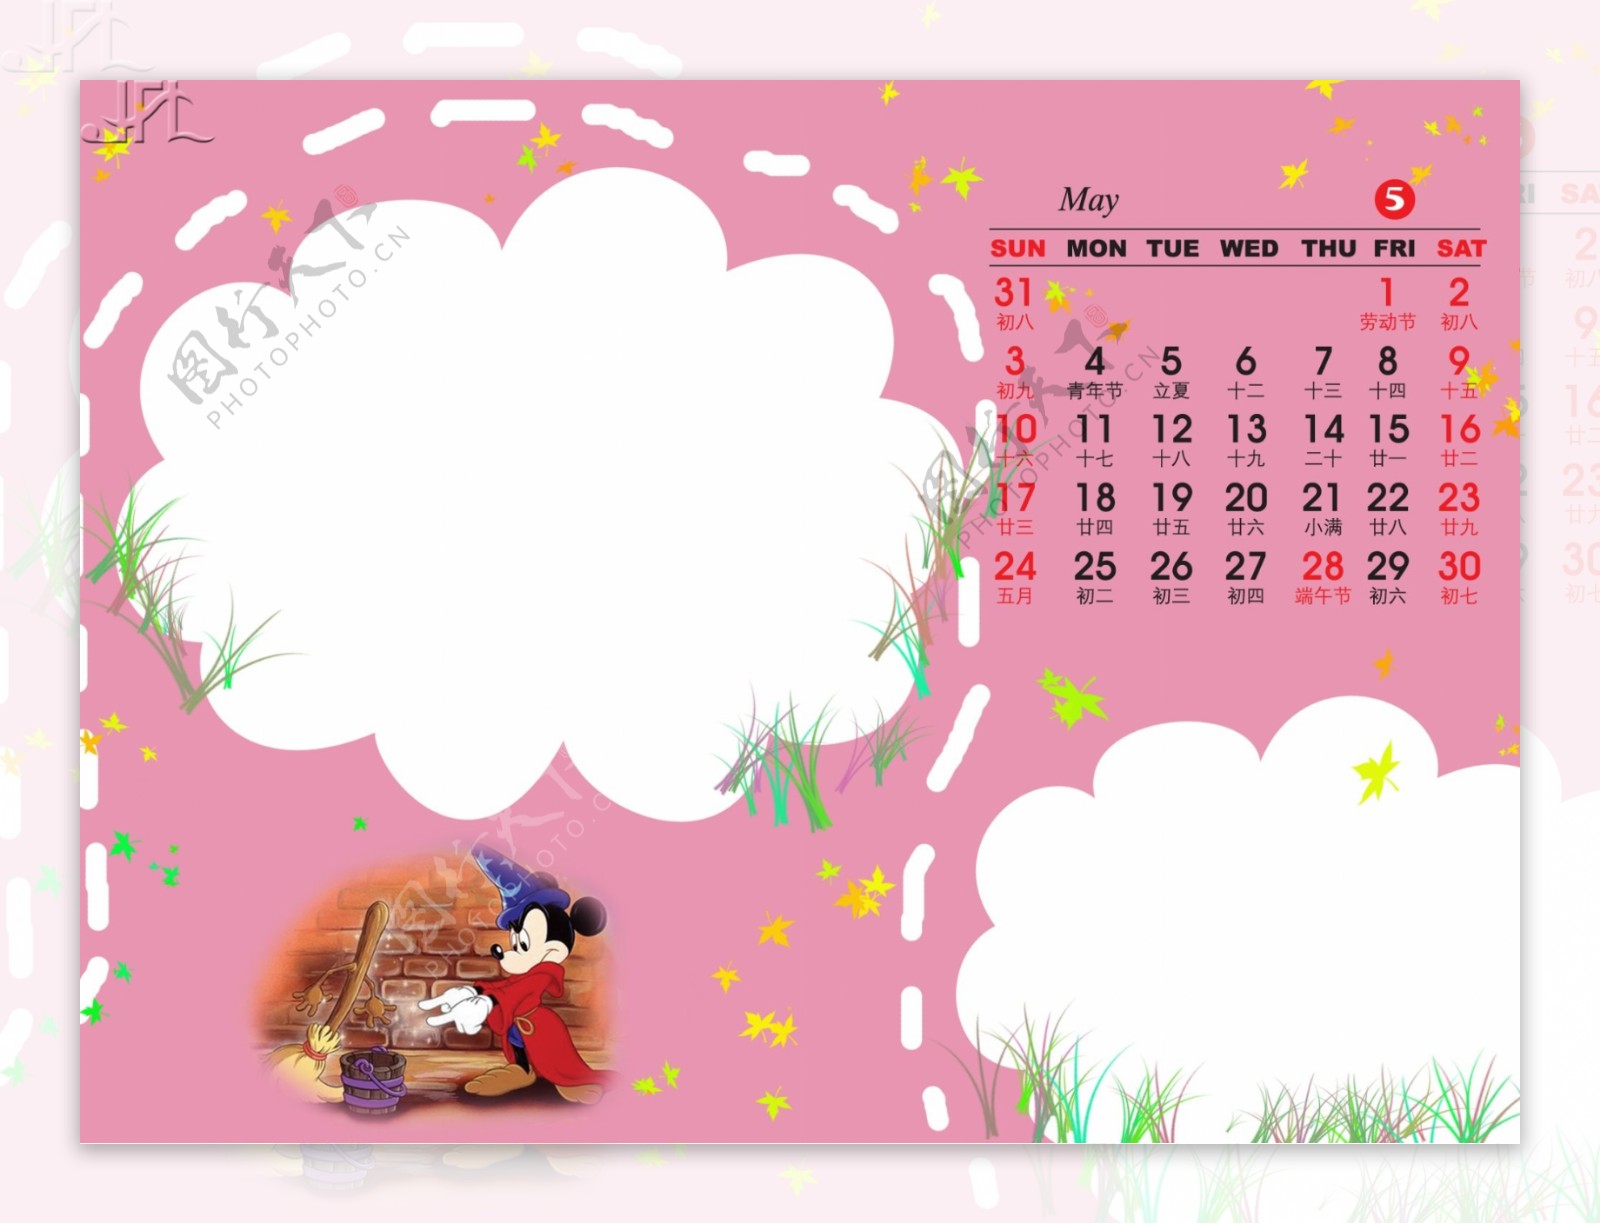 2009年日历模板2009年台历psd模板可爱天使米老鼠全套共13张含封面